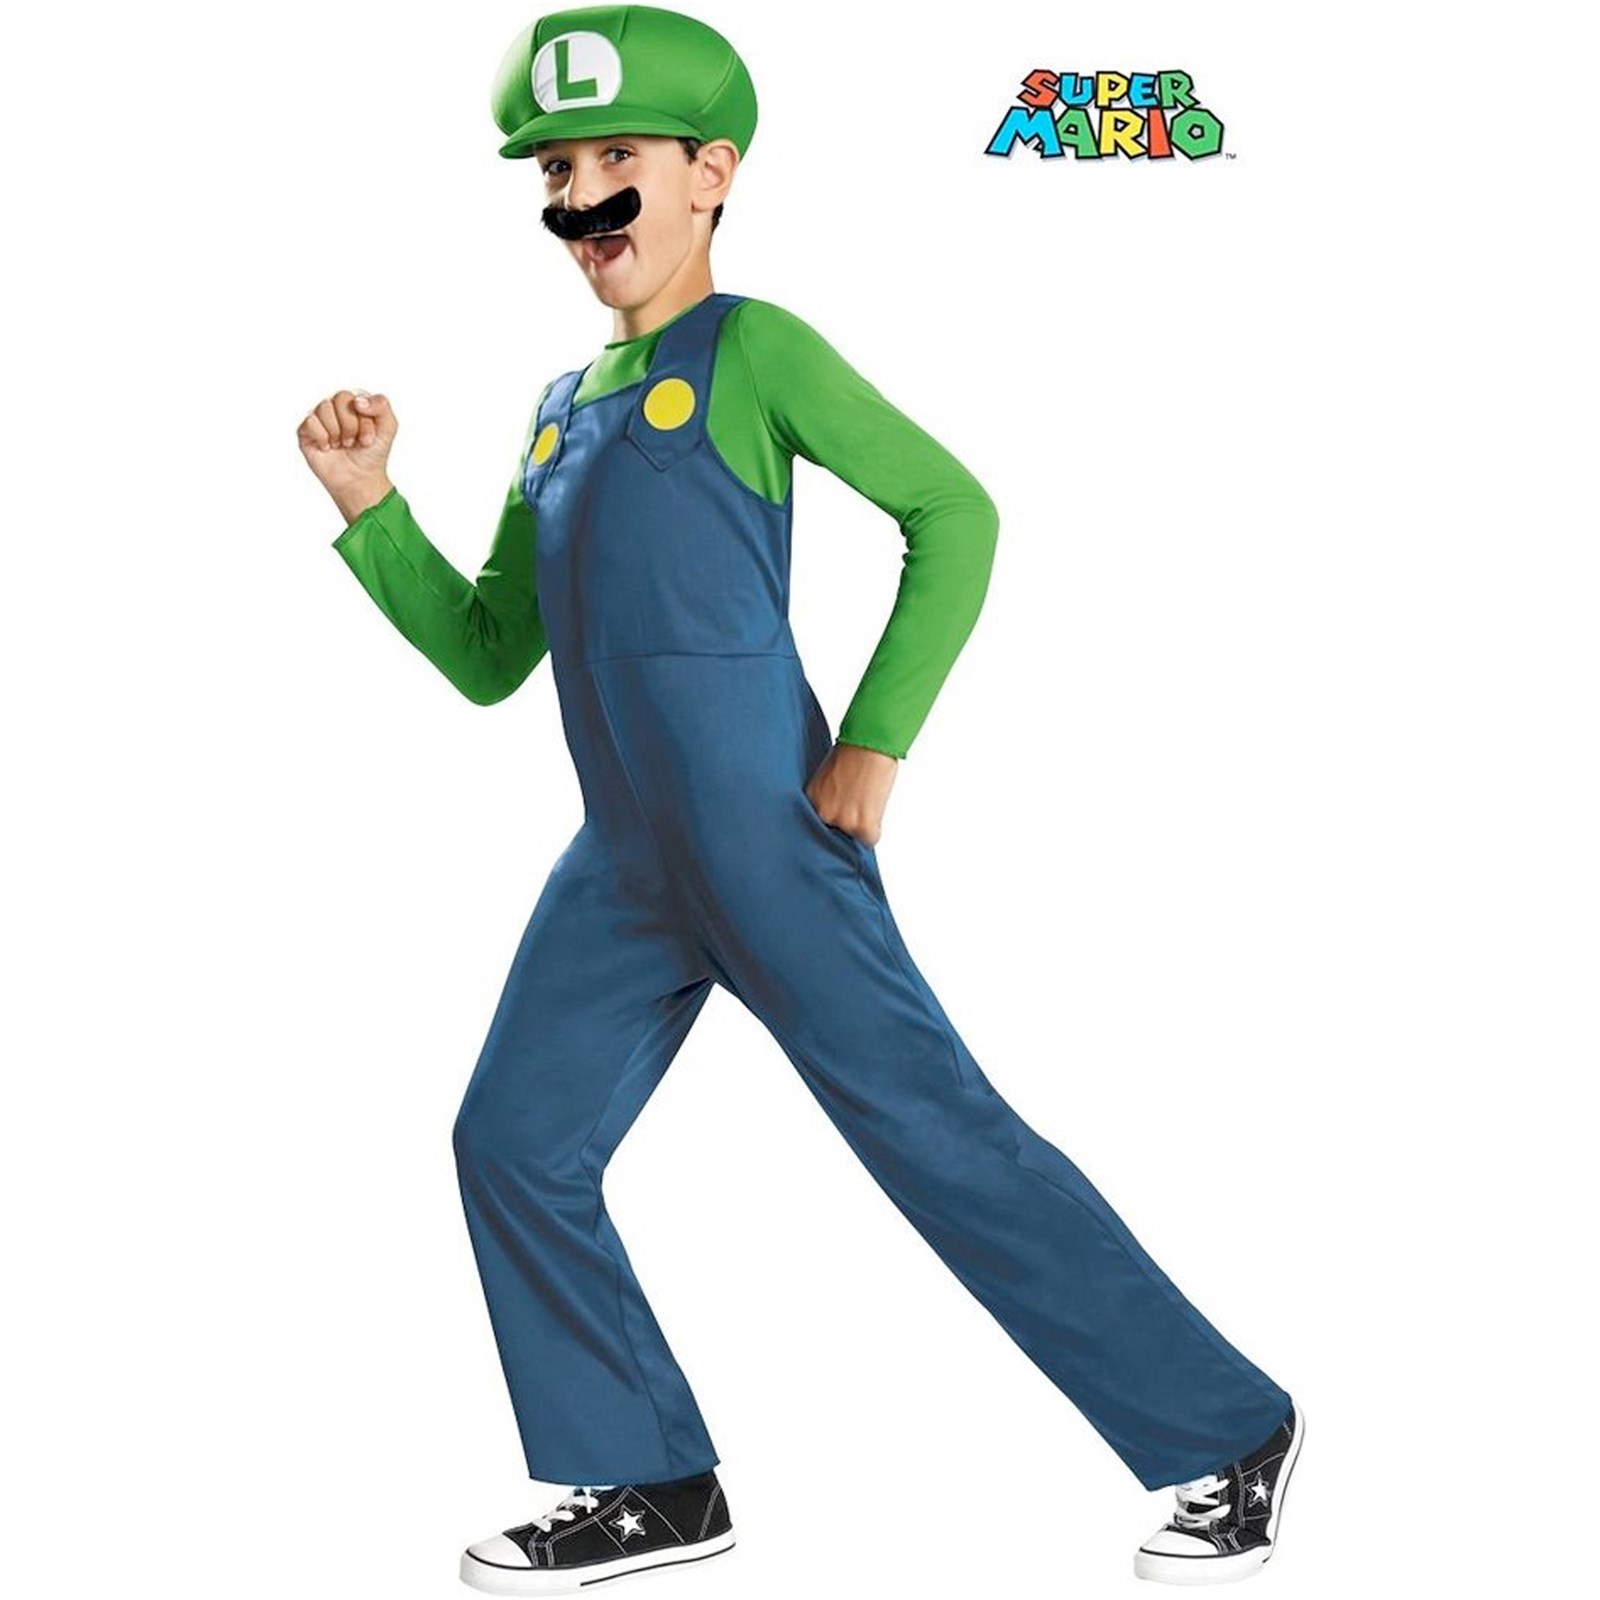 Super Mario Bros Luigi Child Halloween Costume - image 1 of 2